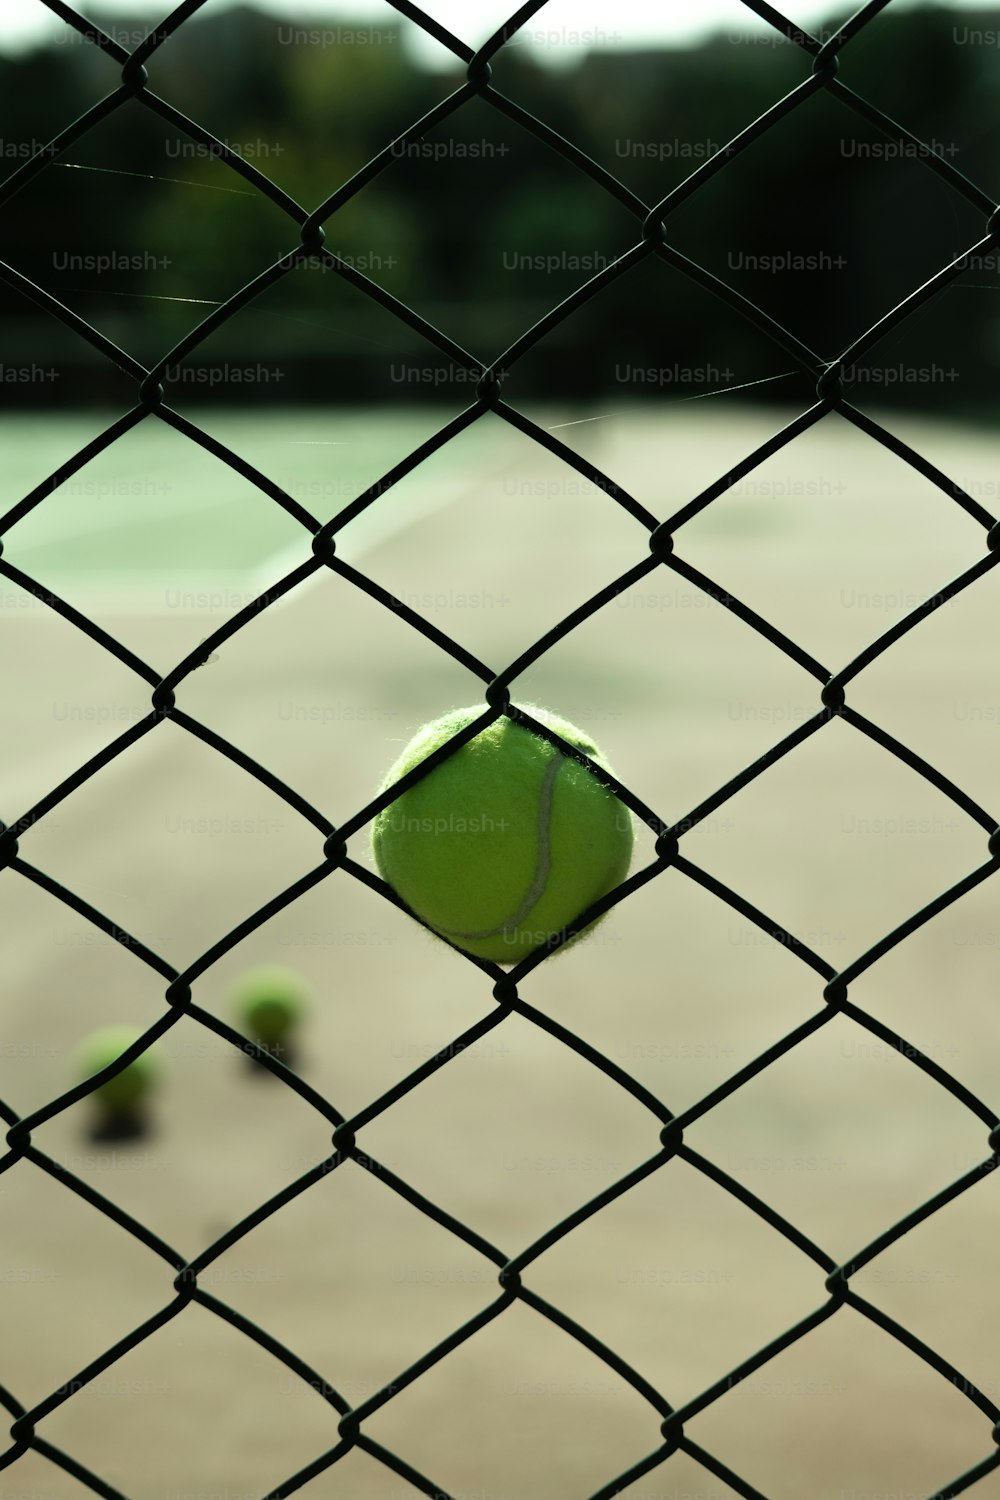 une balle de tennis posée sur un court de tennis